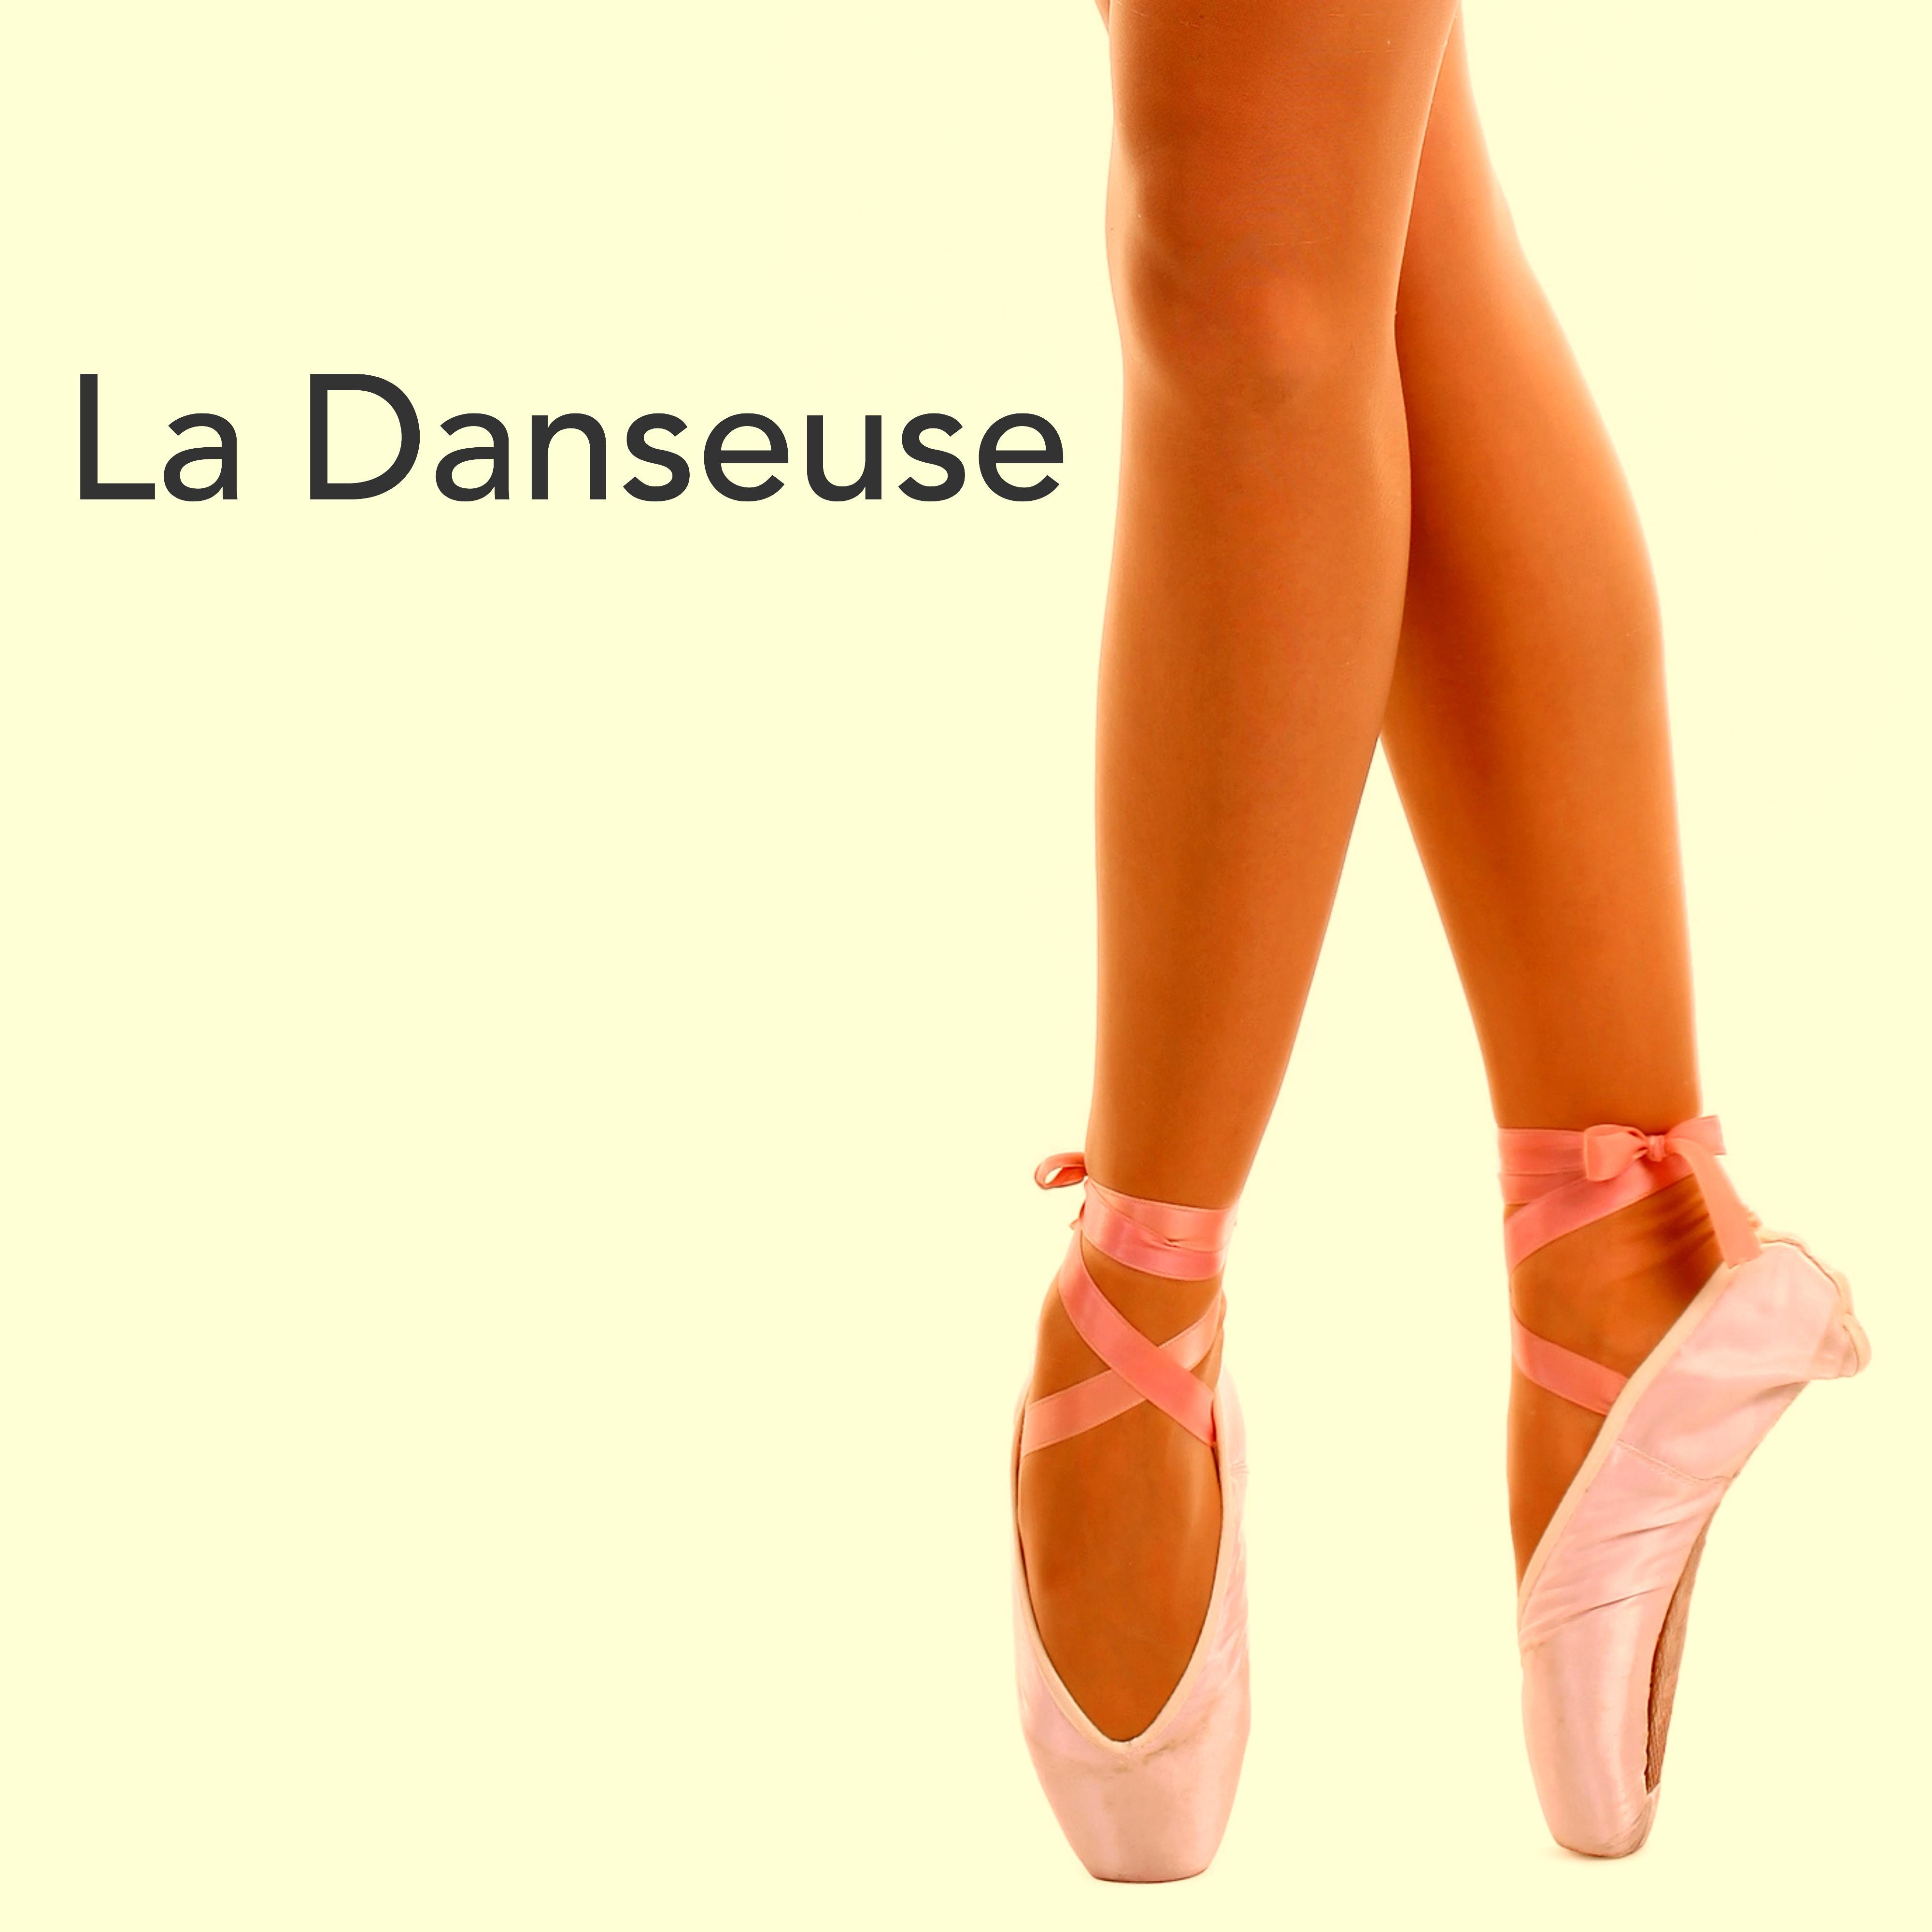 La Danseuse: Piano Musique Classique pour Ballet, Cours de Danse et Pre paration a l' Essai Corps de Ballet